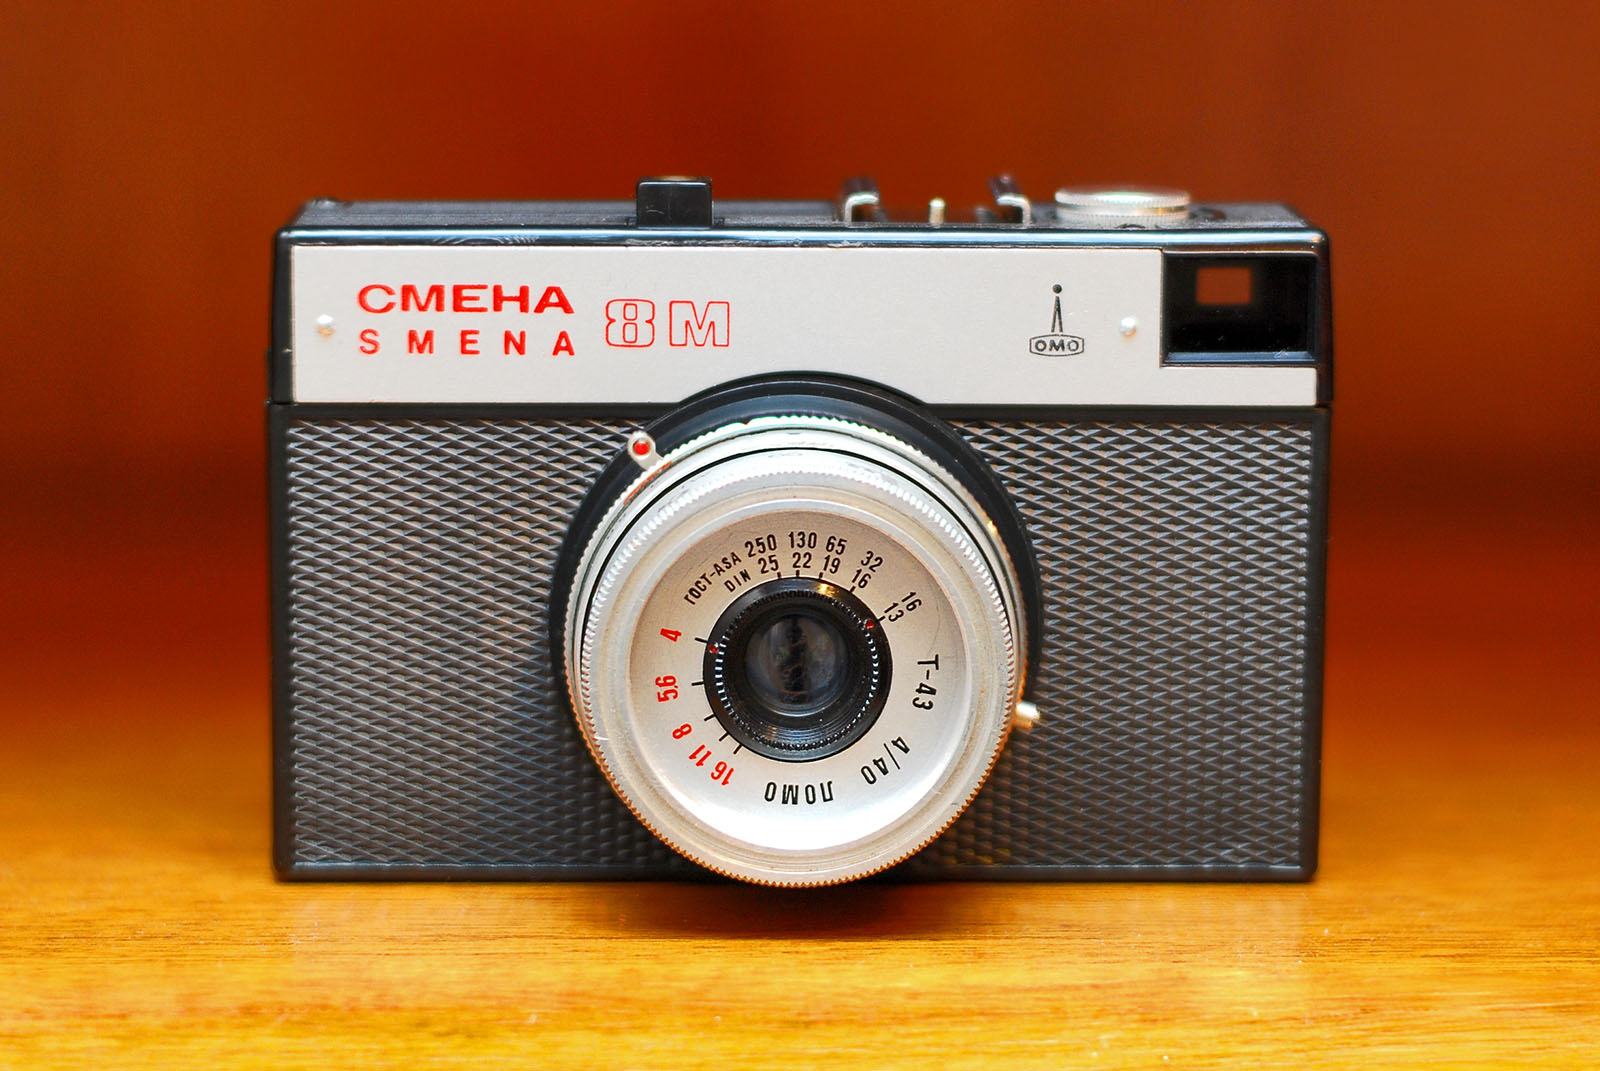 Smena-8M (Смена-8M) oli esimene kaamera mille kasutamine meeles on. Foto Silvio Tanaka/Wikimedia.